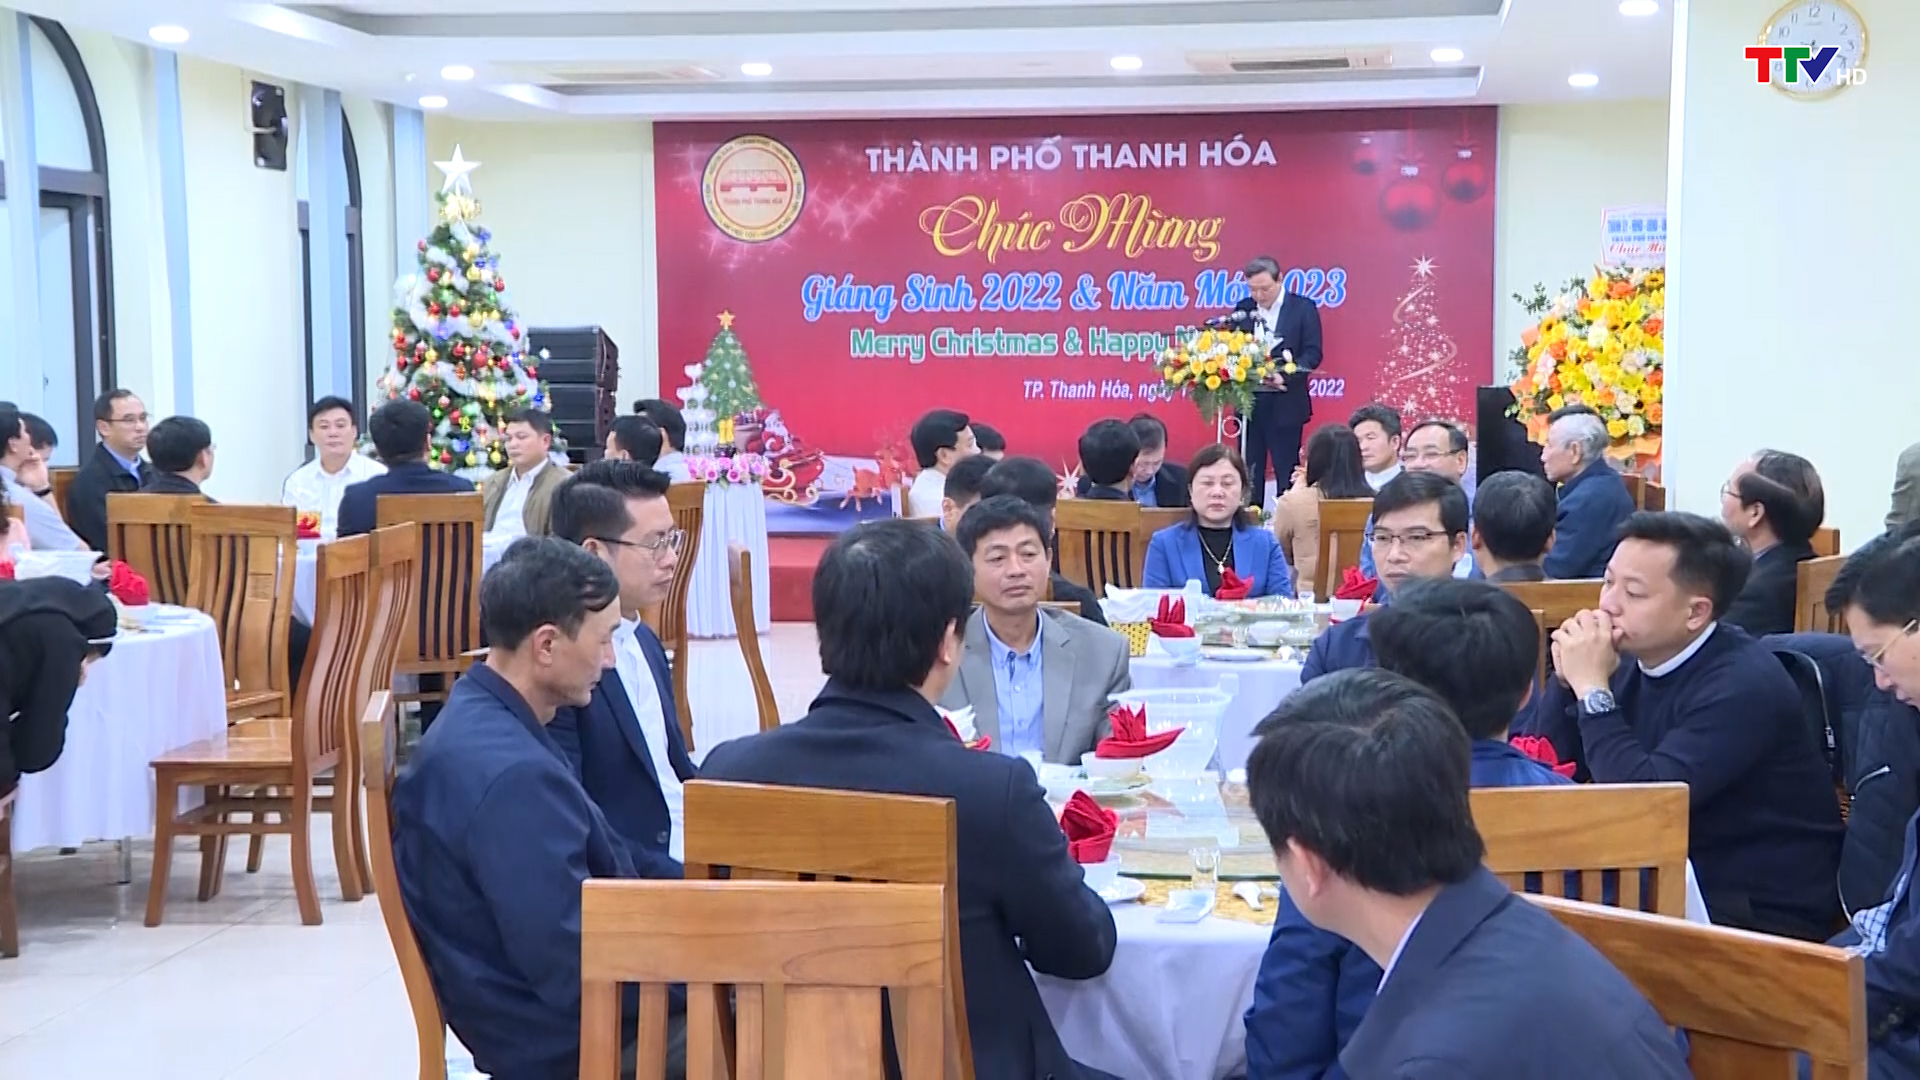 Thành phố Thanh Hóa gặp mặt các chức sắc công giáo nhân dịp lễ Thiên chúa Giáng sinh năm 2022 - Ảnh 2.